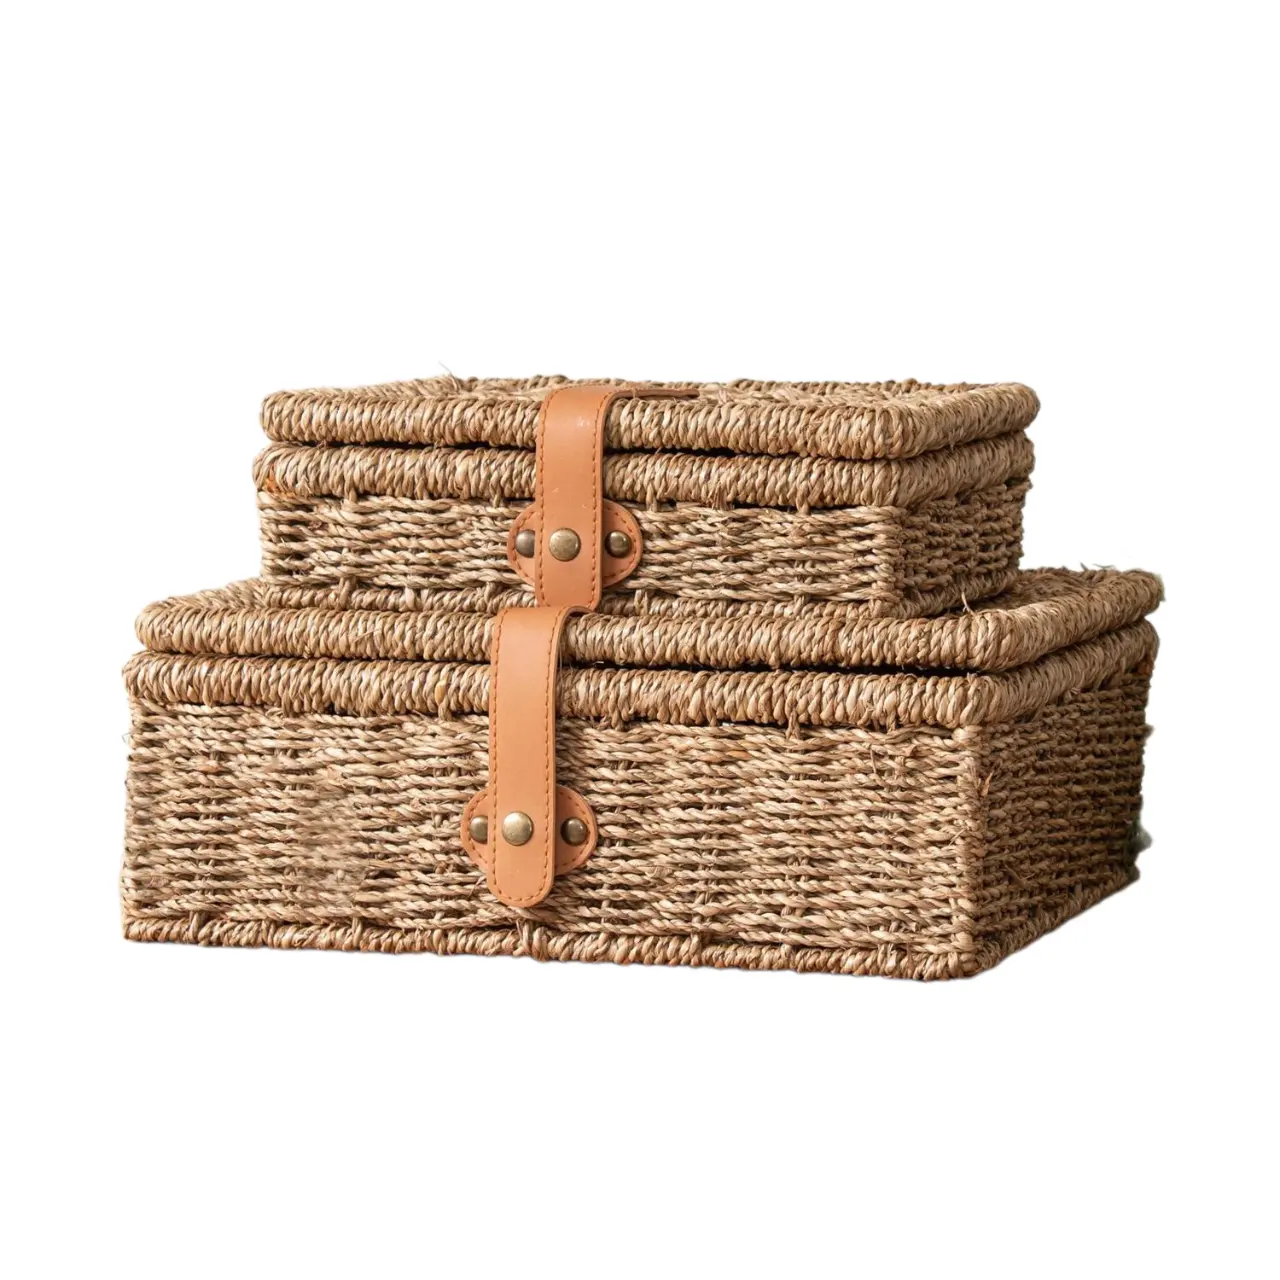 Cajas de almacenamiento de algas marinas tejidas de diseño elegante Simple con correa de cuero para organización y decoración del hogar cesta de regalo de nacimiento